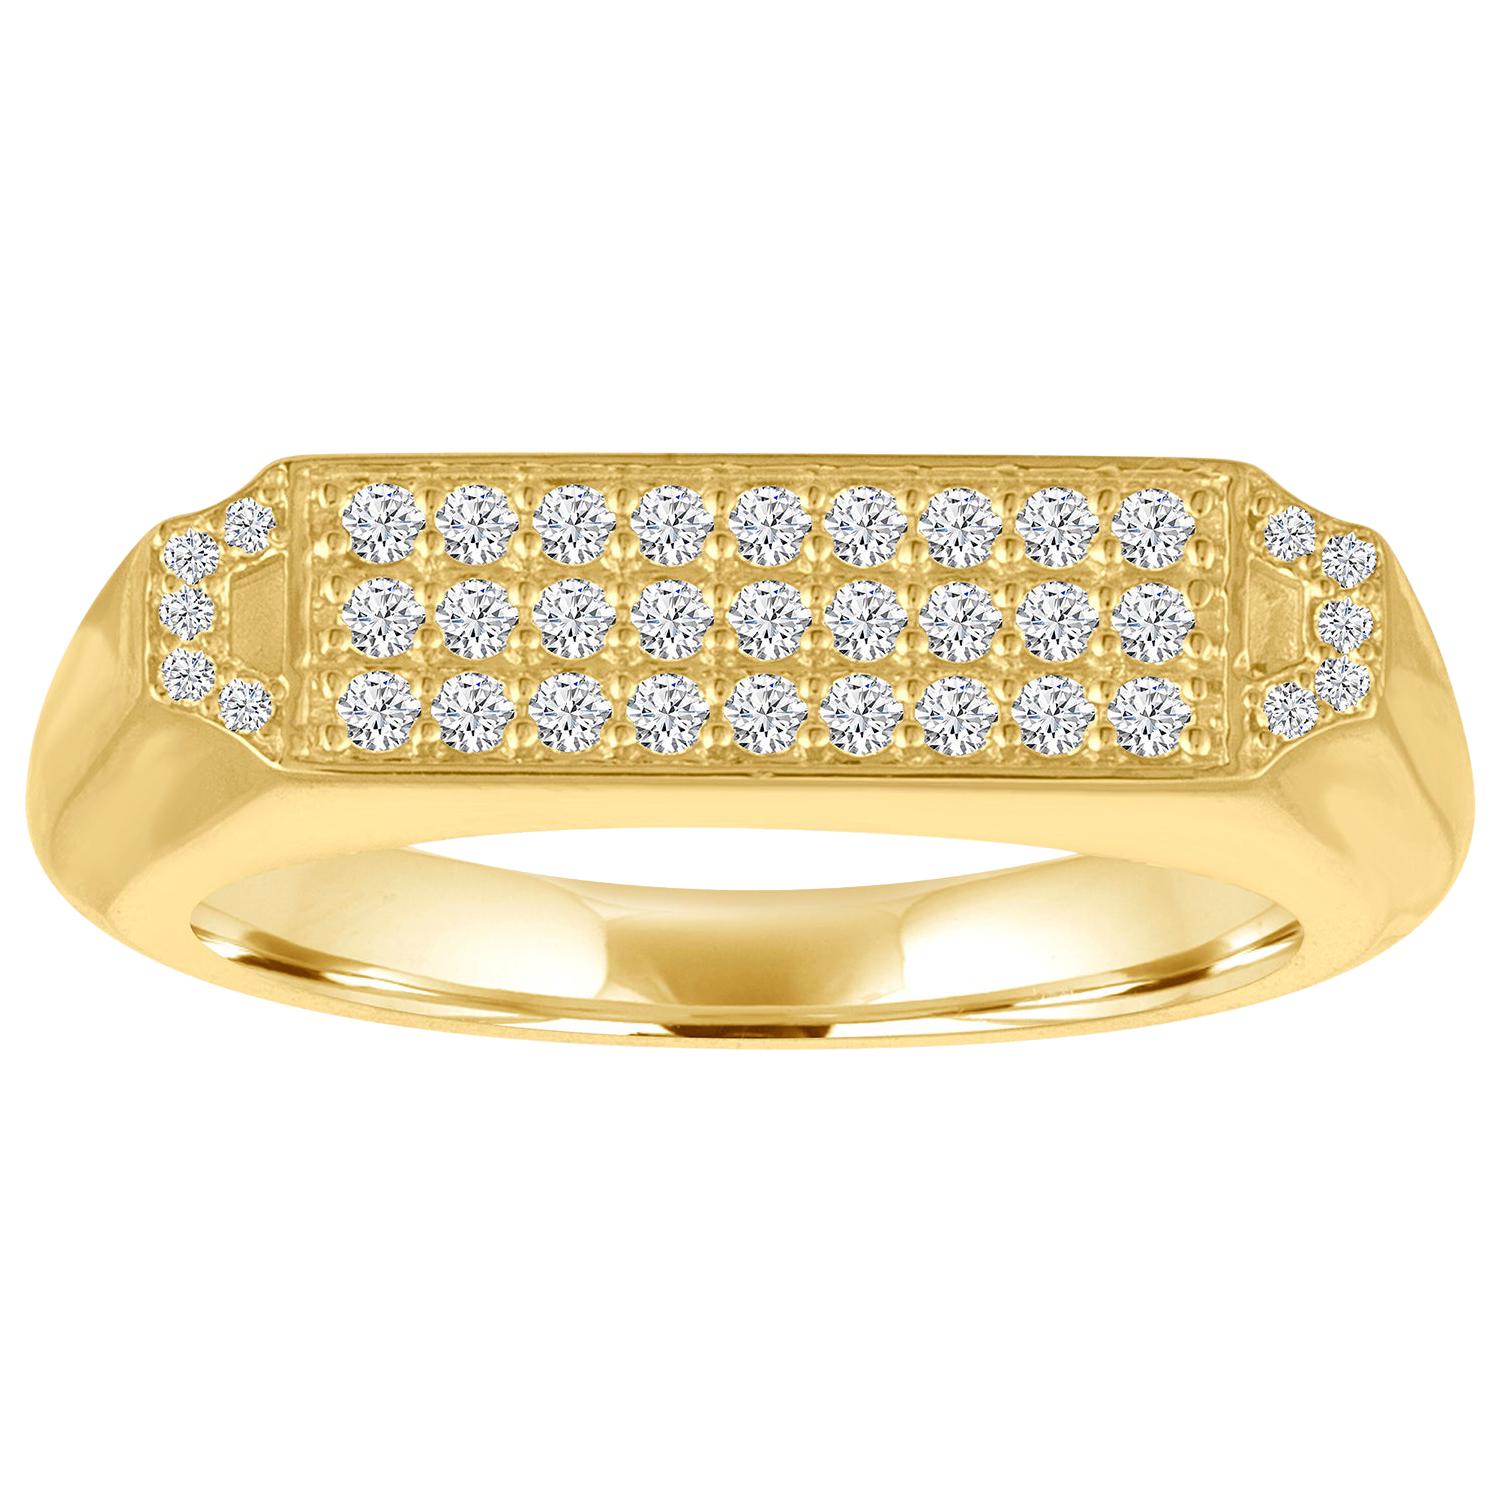 Siegelring aus 18 Karat Gold und Diamanten, Pavé-Deco-inspiriert